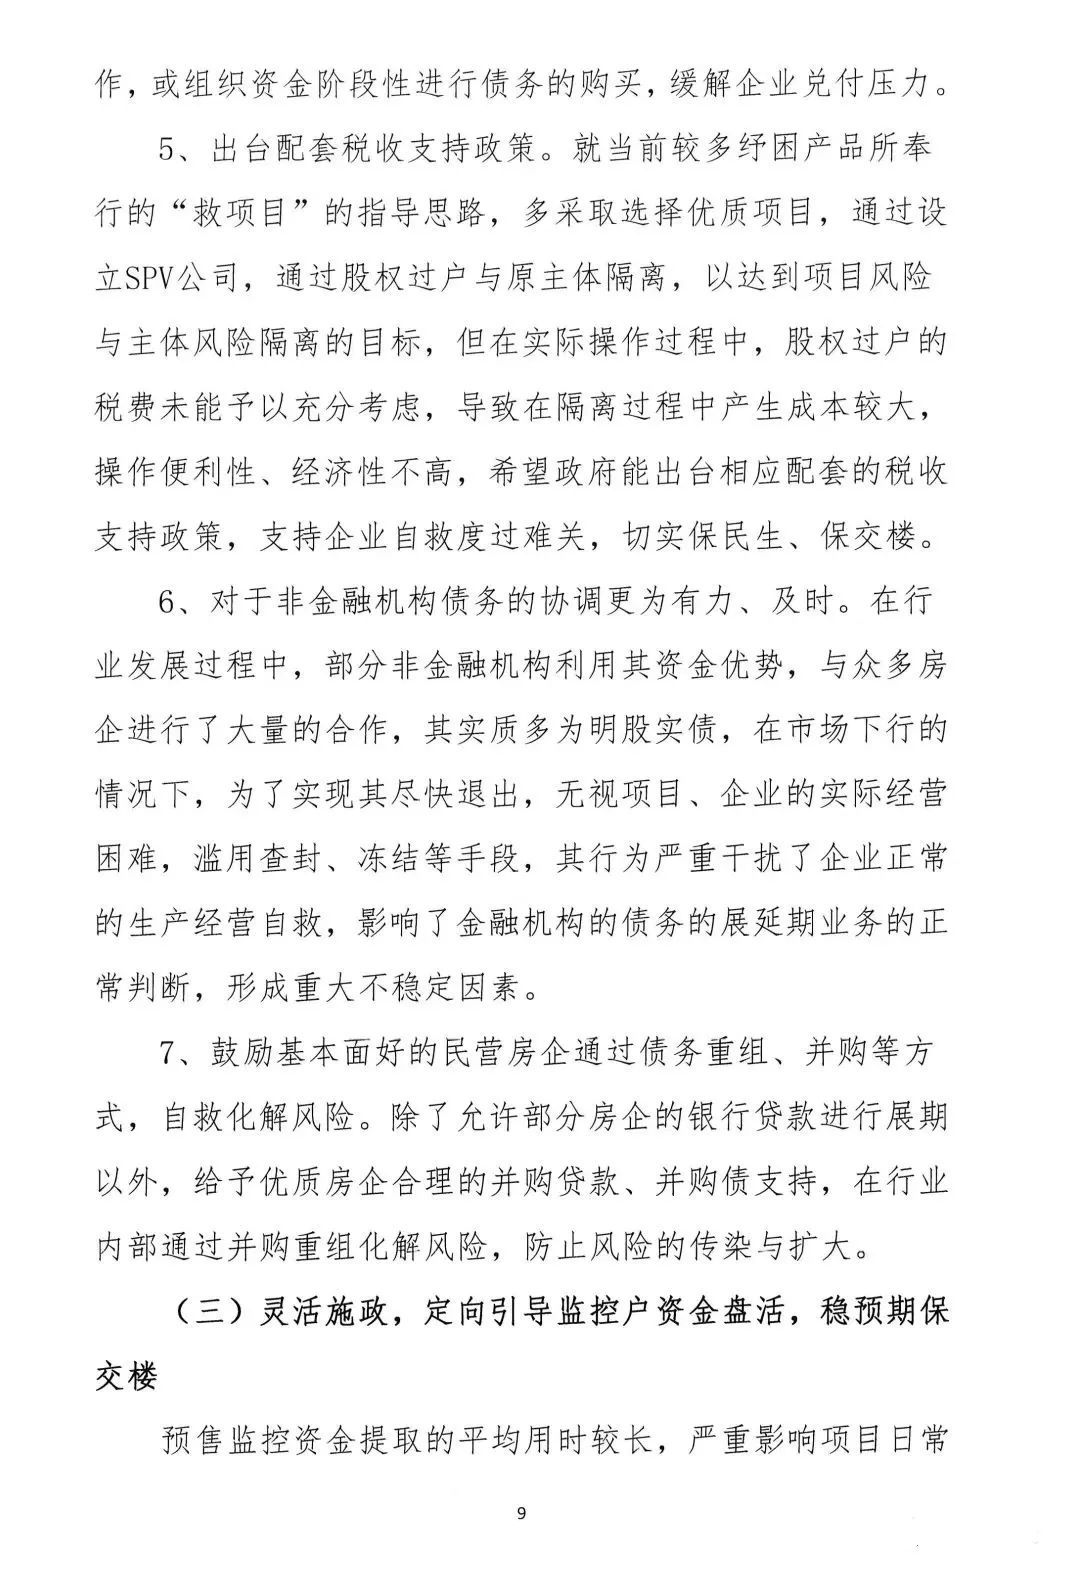 2022年6月6日，广东省地产商会向省住建厅递交了一份文件《关于促进房地产业平稳健康发展的意见和建议》粵地会〔2021〕1号。9.png